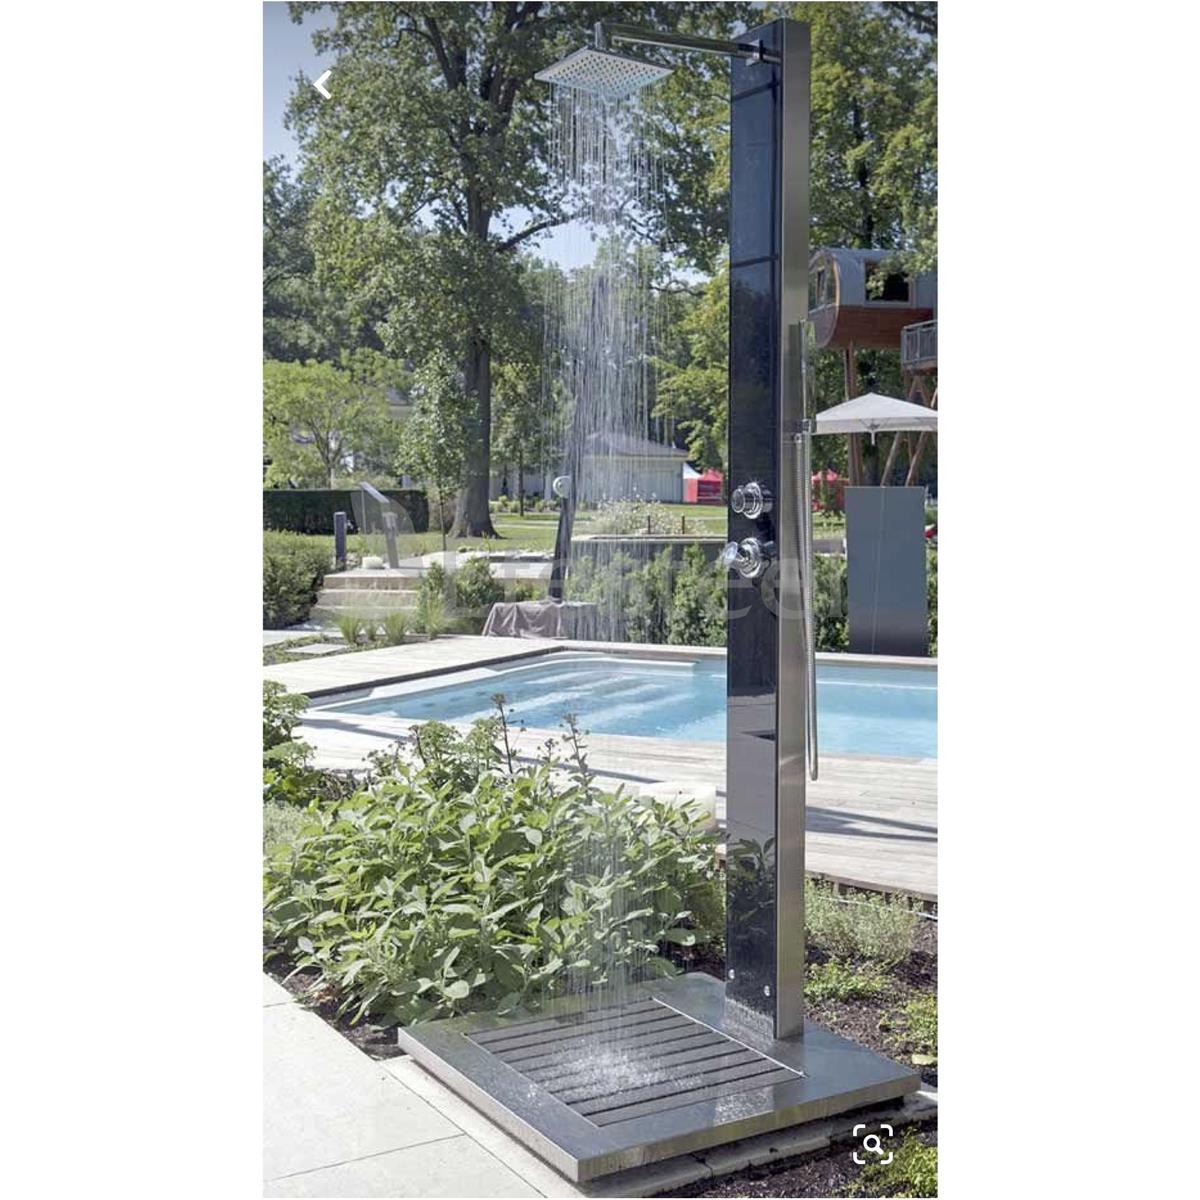 Luxury Stella - Seri Tekli Ayak Yıkamalı Havuz Bahçe Duşu